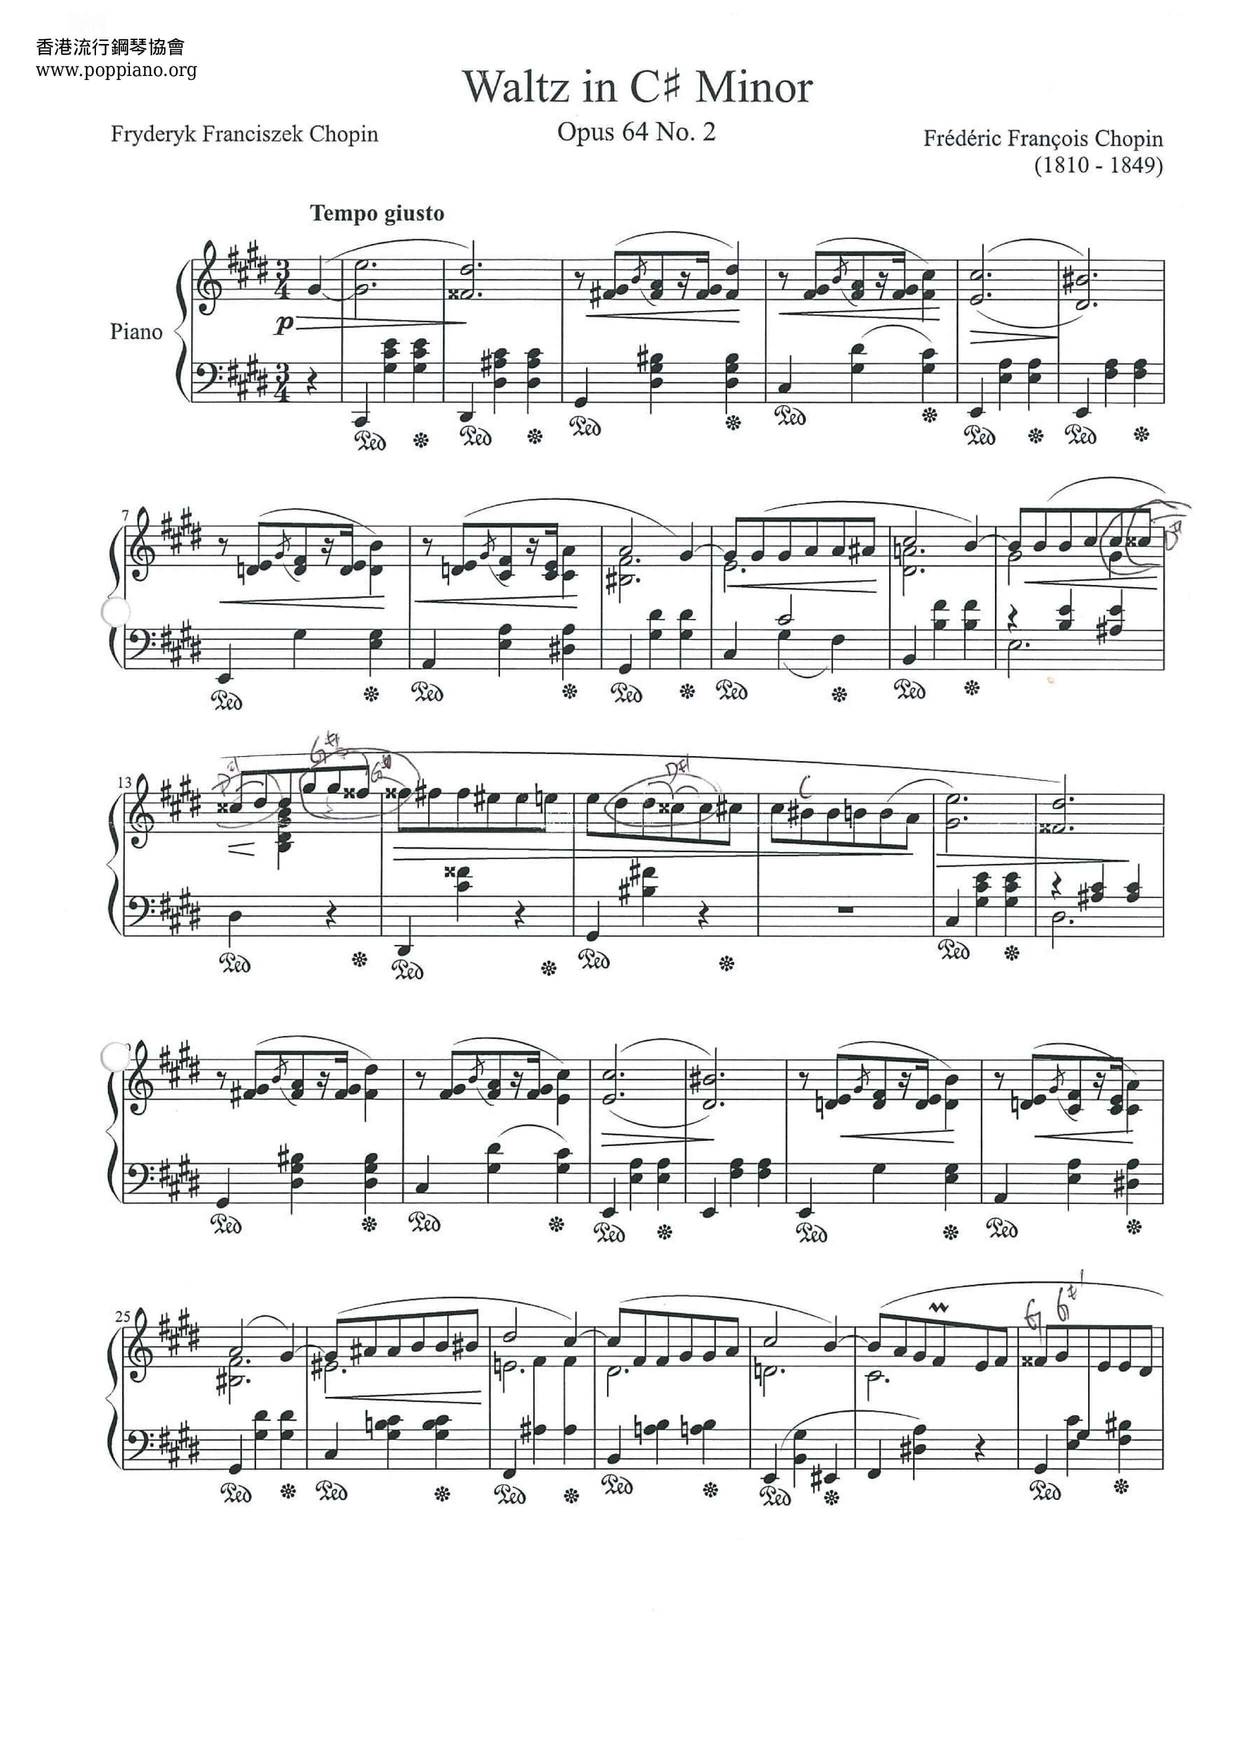 Waltz In C# Minor, Op. 64, No. 2ピアノ譜